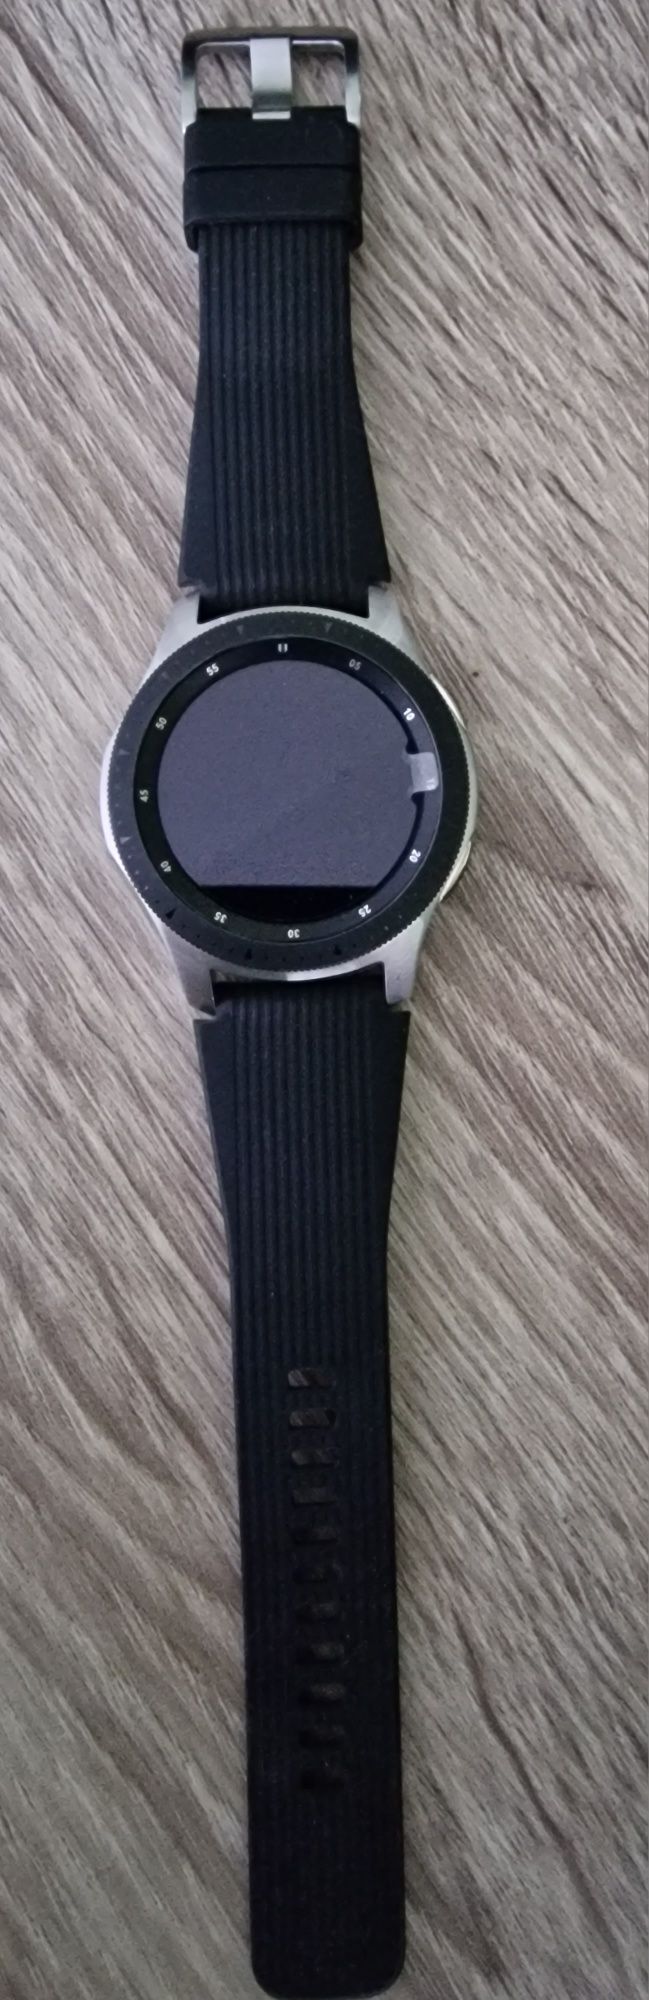 Smart watch Samsung 46mm jak nowy kilka razy użyty